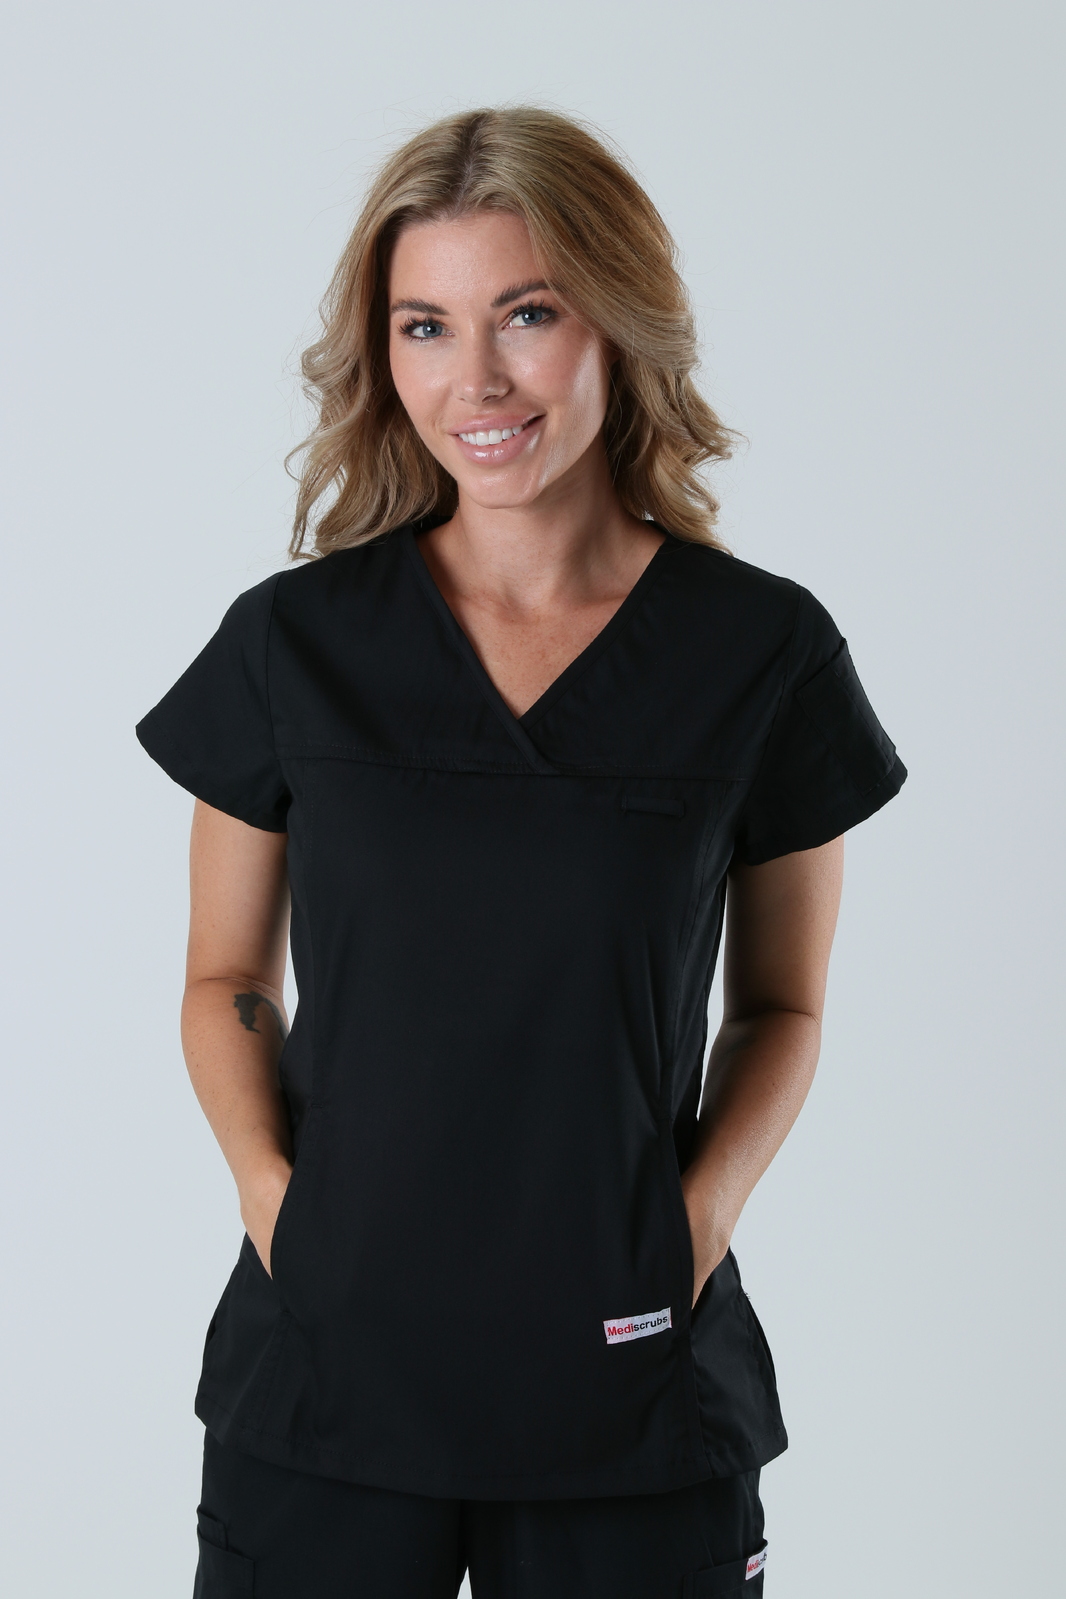 Queensland Children's Hospital Emergency Department Nurse Practitioner Uniform Top Bundle  (Women's Fit Top in Black incl Logos)